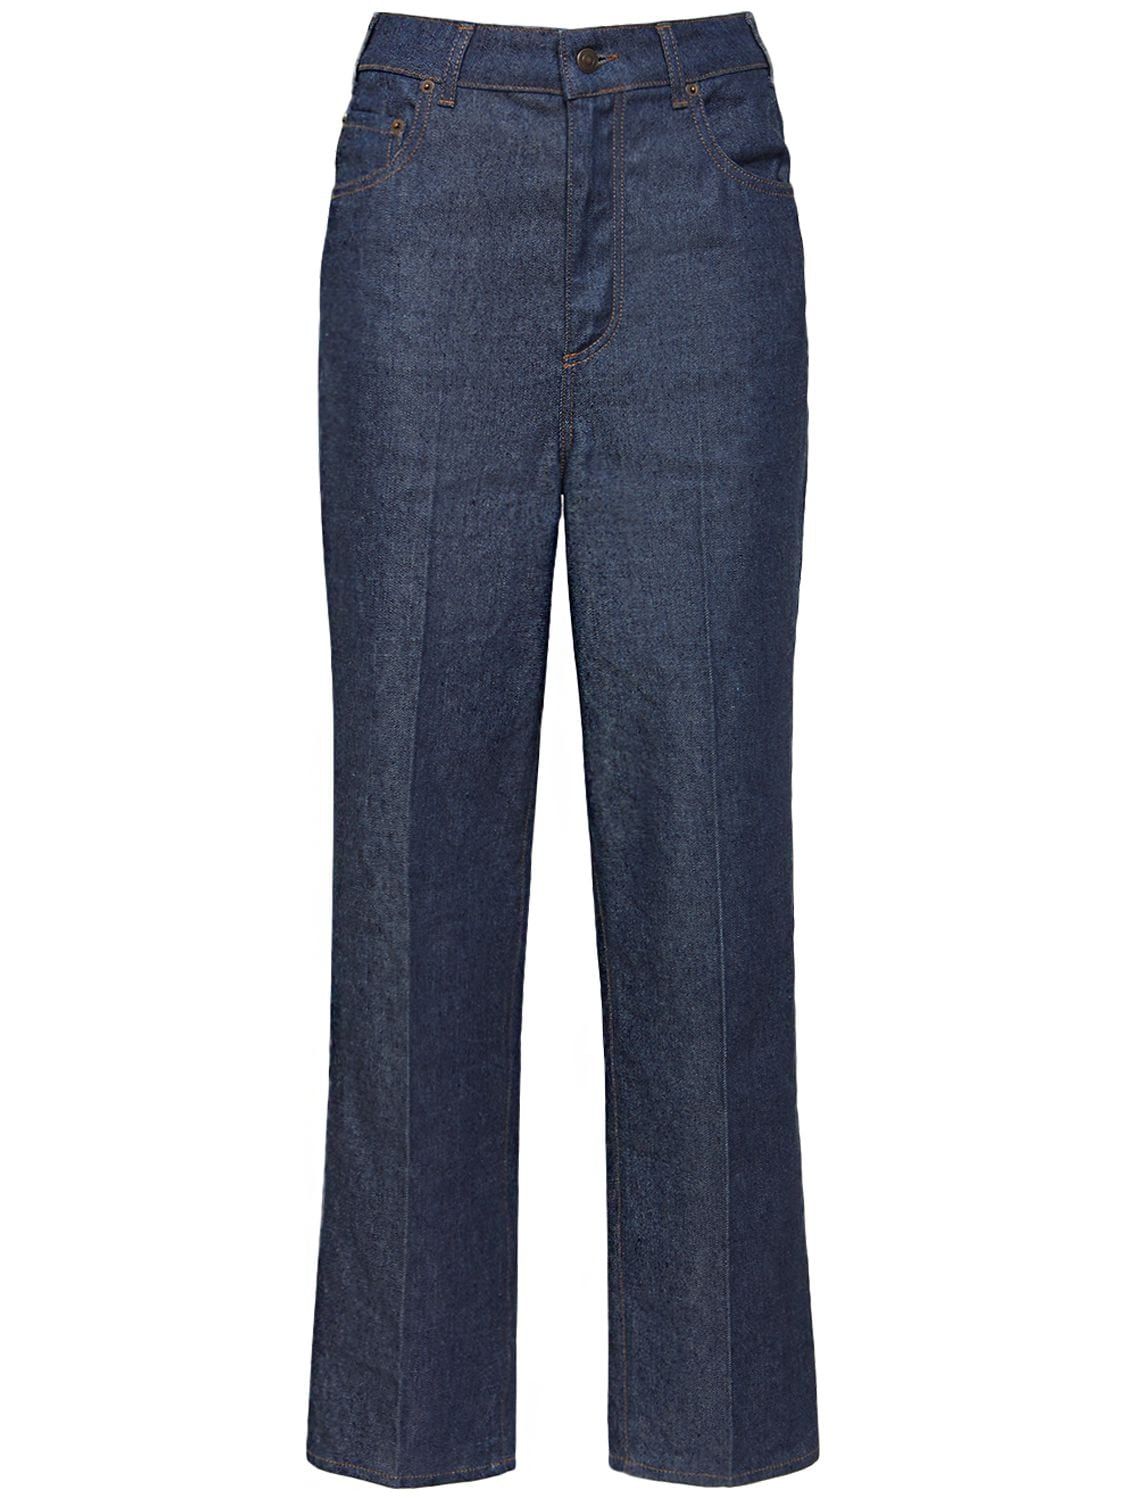 Loro Piana Madley Cotton & Linen Straight Jeans In Denim